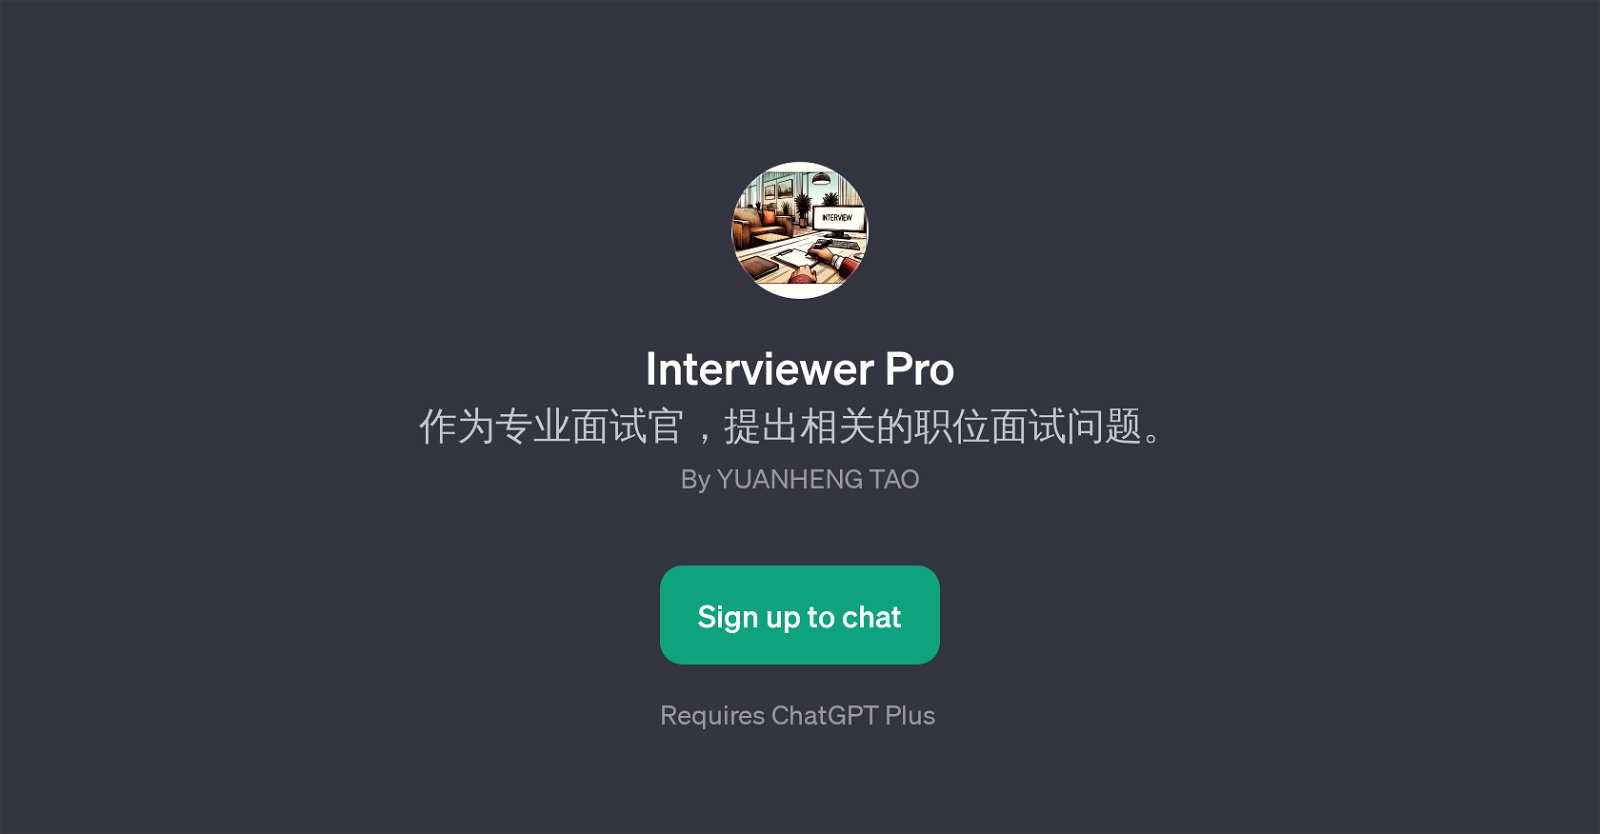 Interviewer Pro website